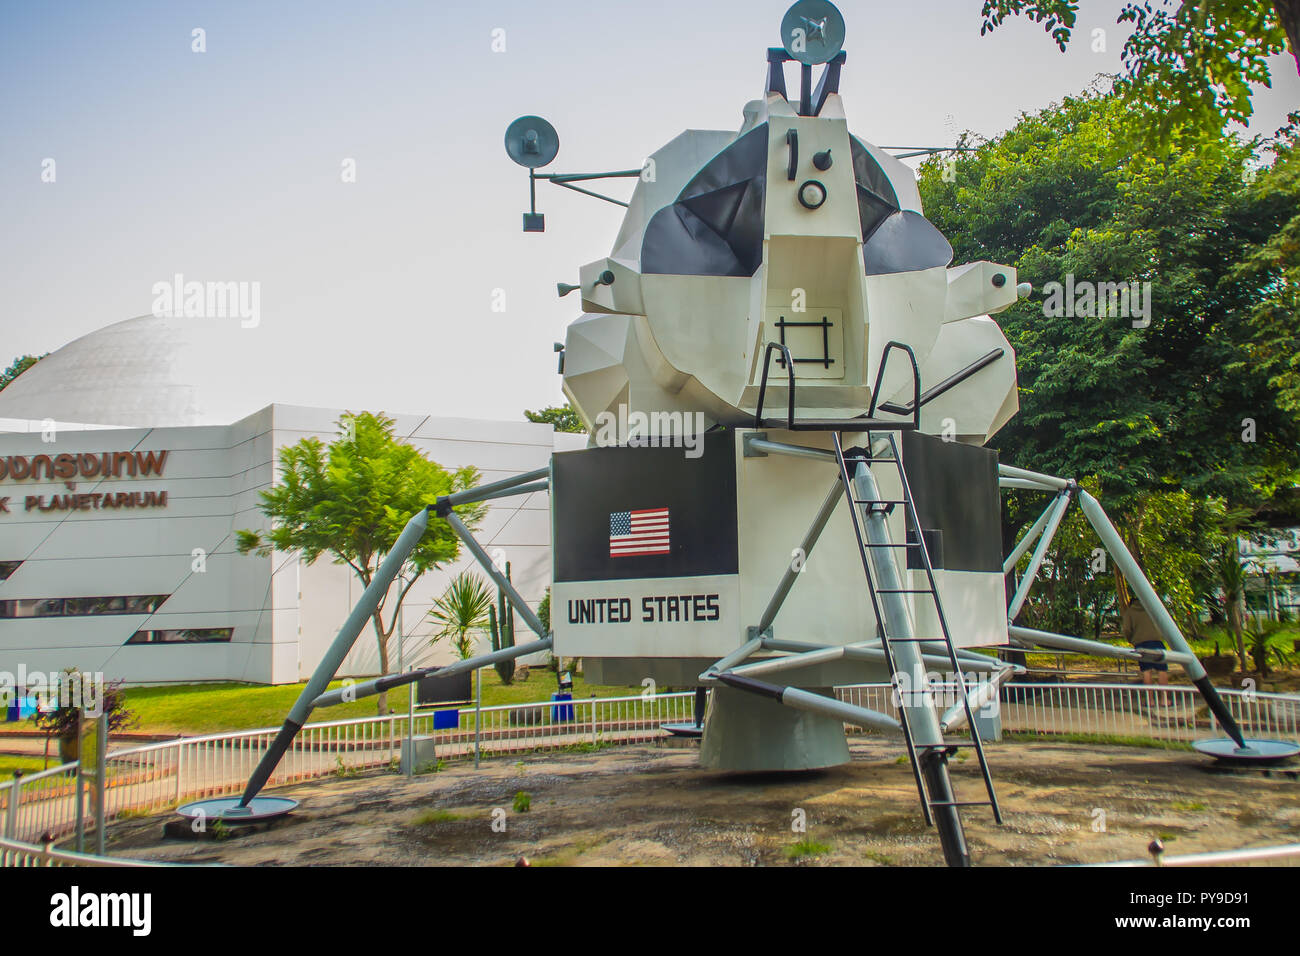 Bangkok, Thailand - November 4, 2017: das Modell der Apollo Lunar Module, das landegerät Teil des Apollo Raumschiff für den US-amerikanischen Apollo Programm. Stockfoto